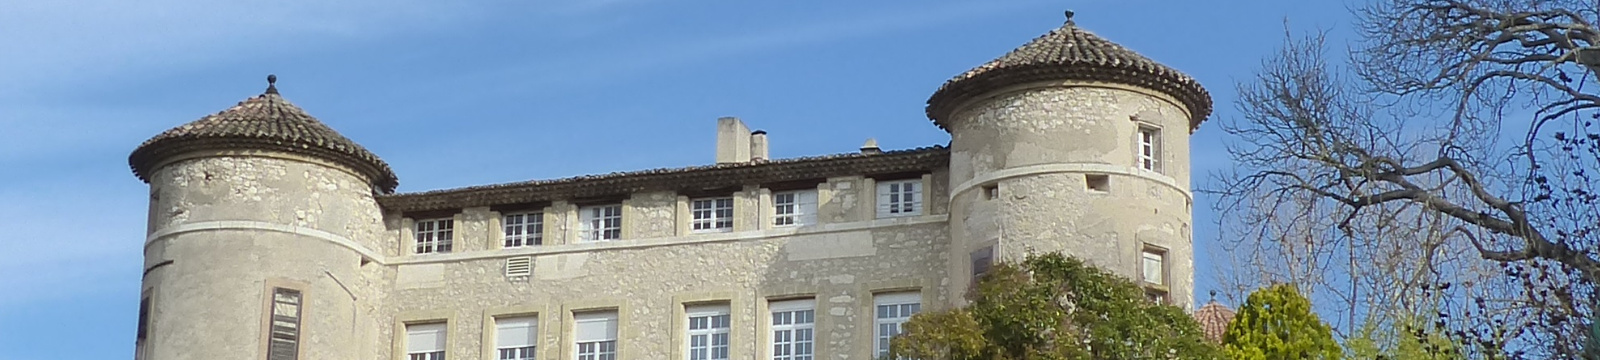 Château de Florans